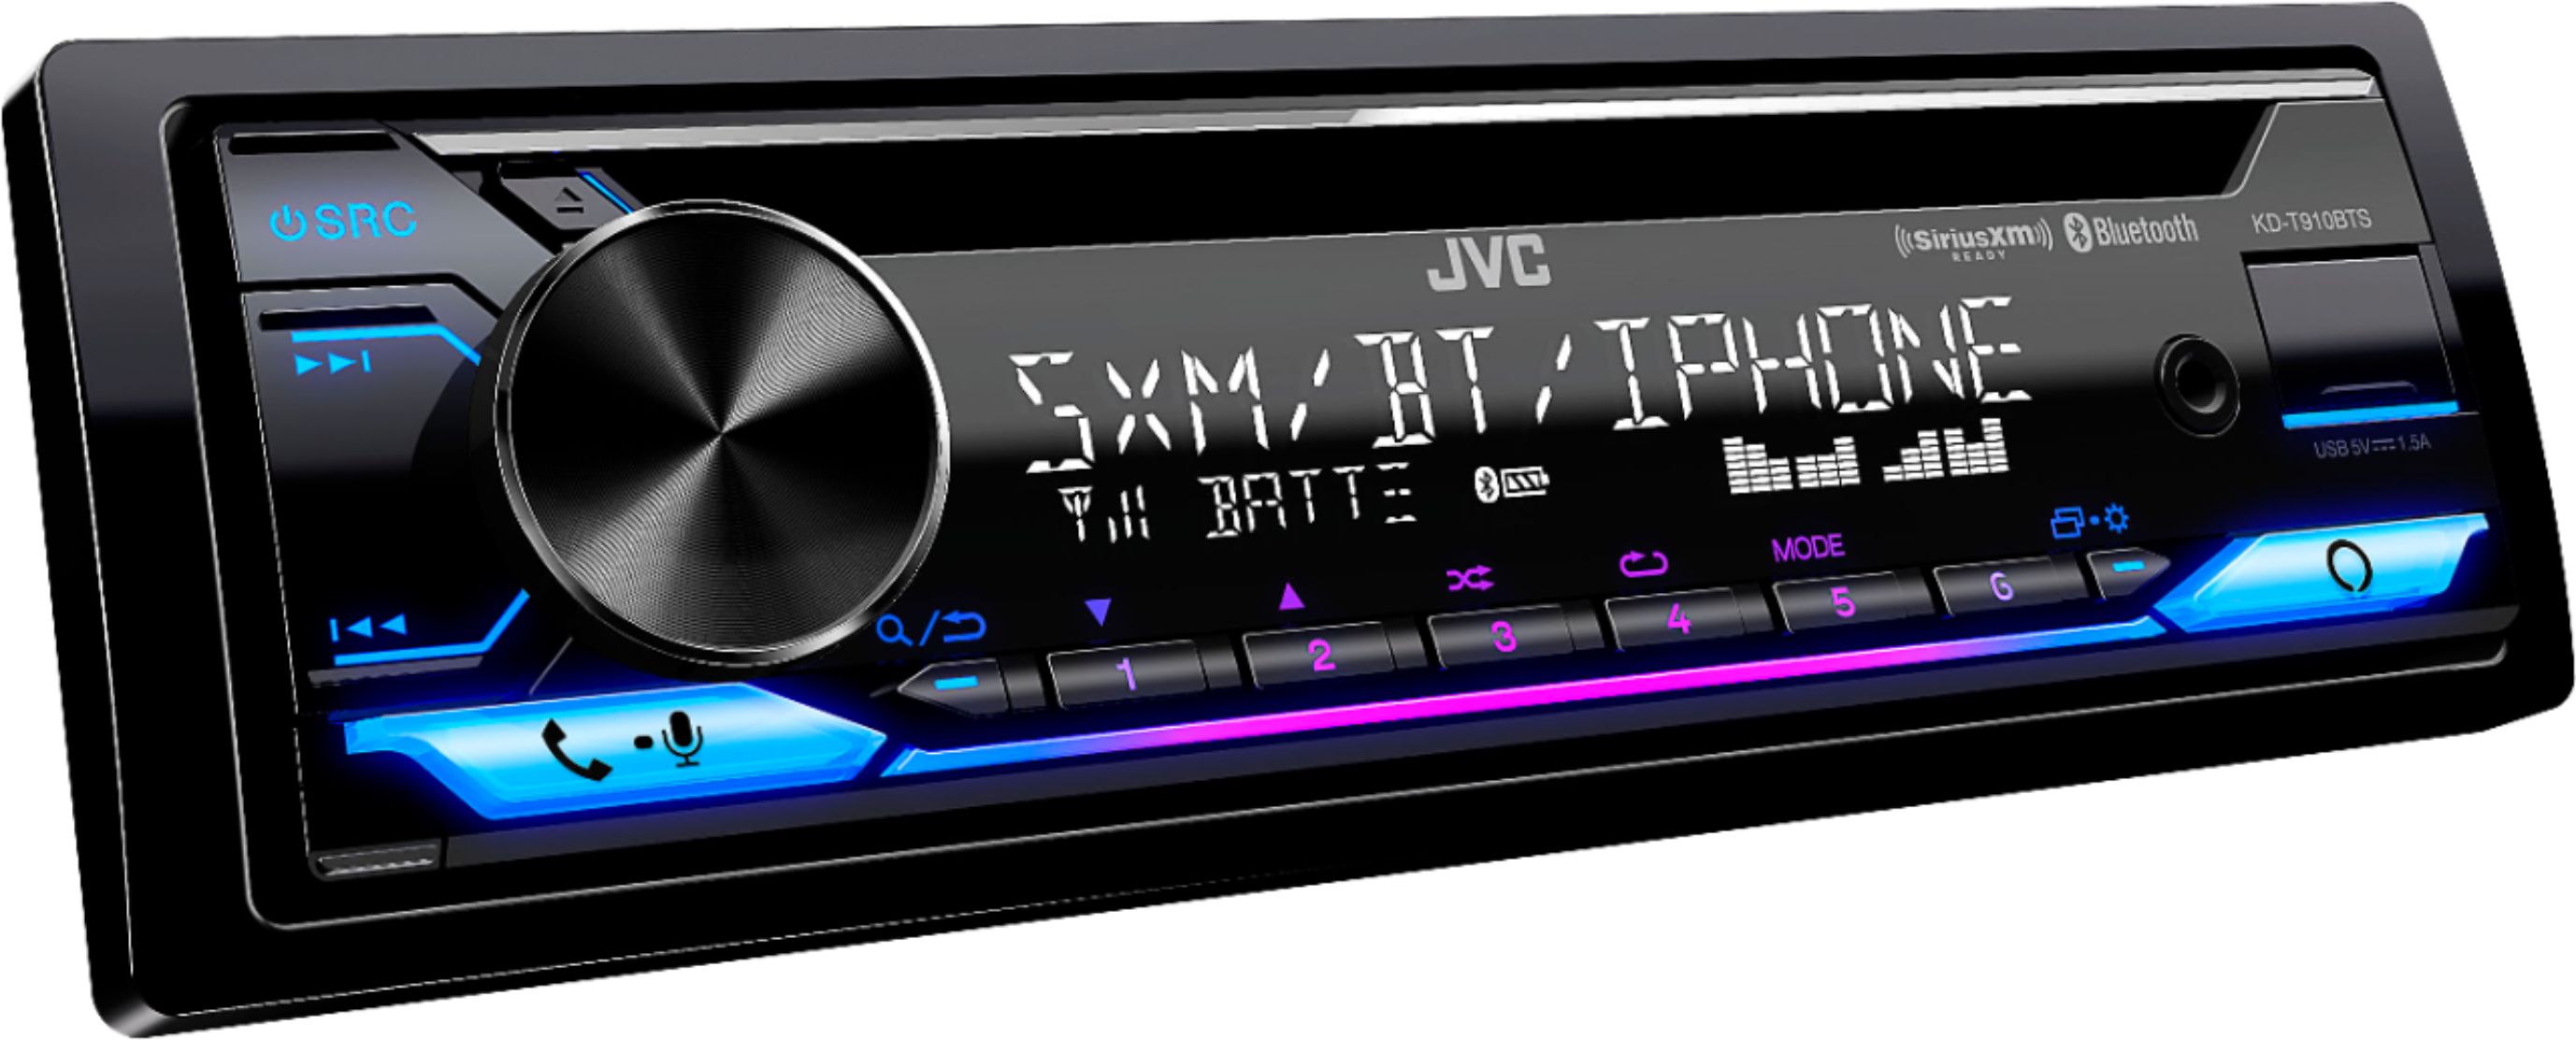 JVC Built-in Bluetooth In-Dash CD/DM Receiver Black KW-R940BTS